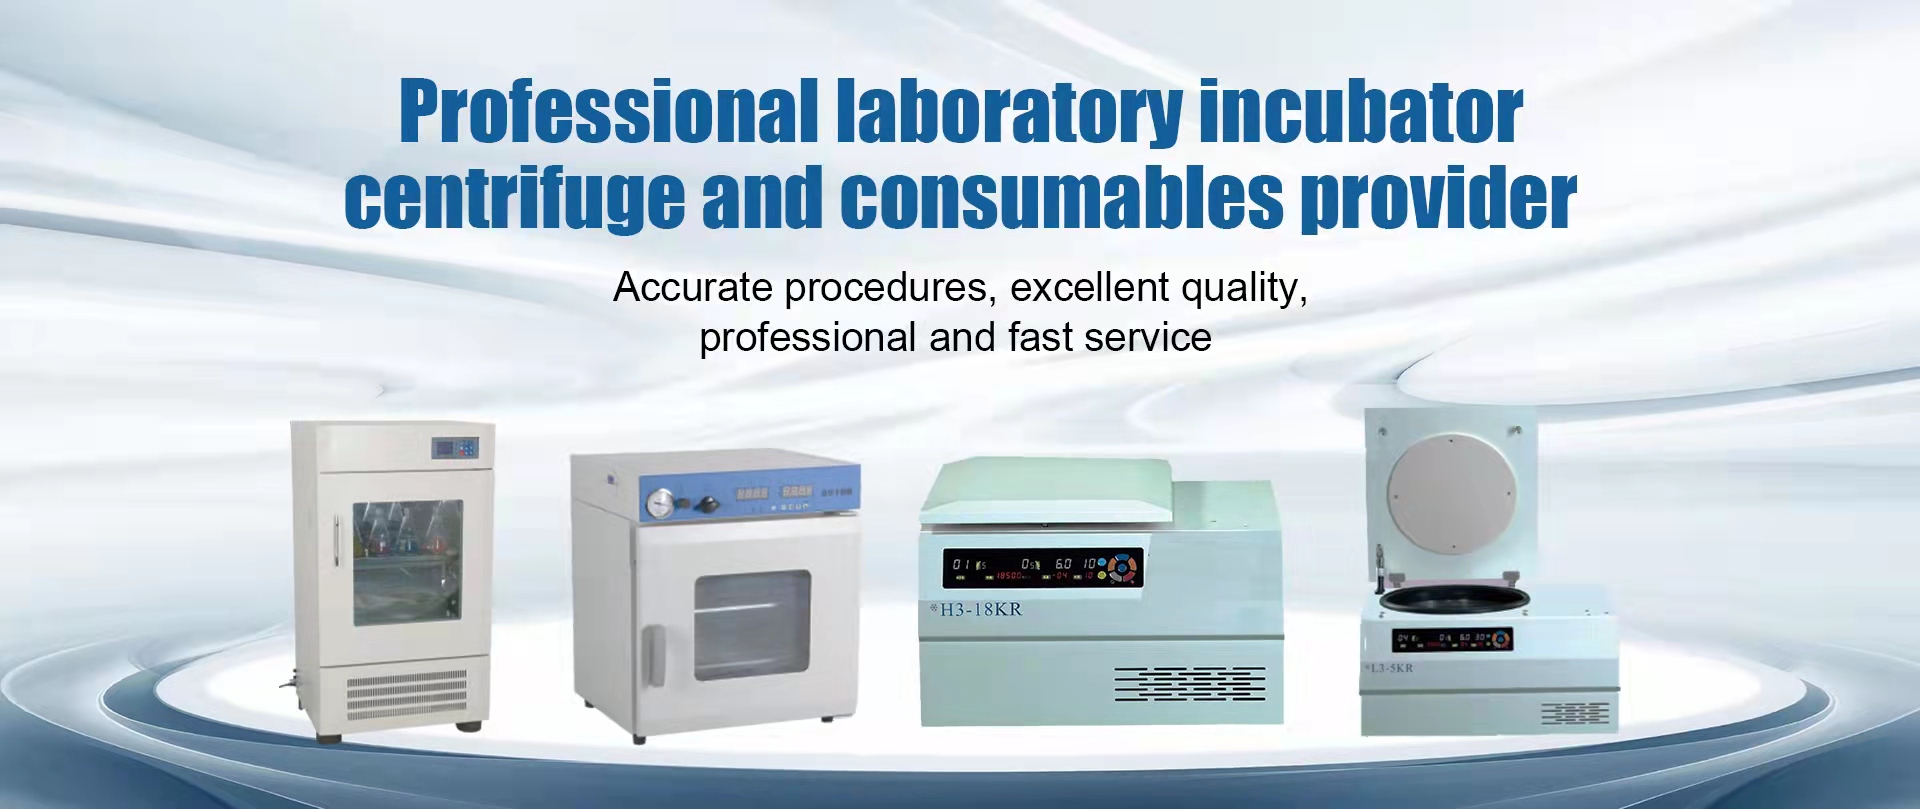 Proveedor profesional de incubadoras de laboratorio, centrífugas y consumibles